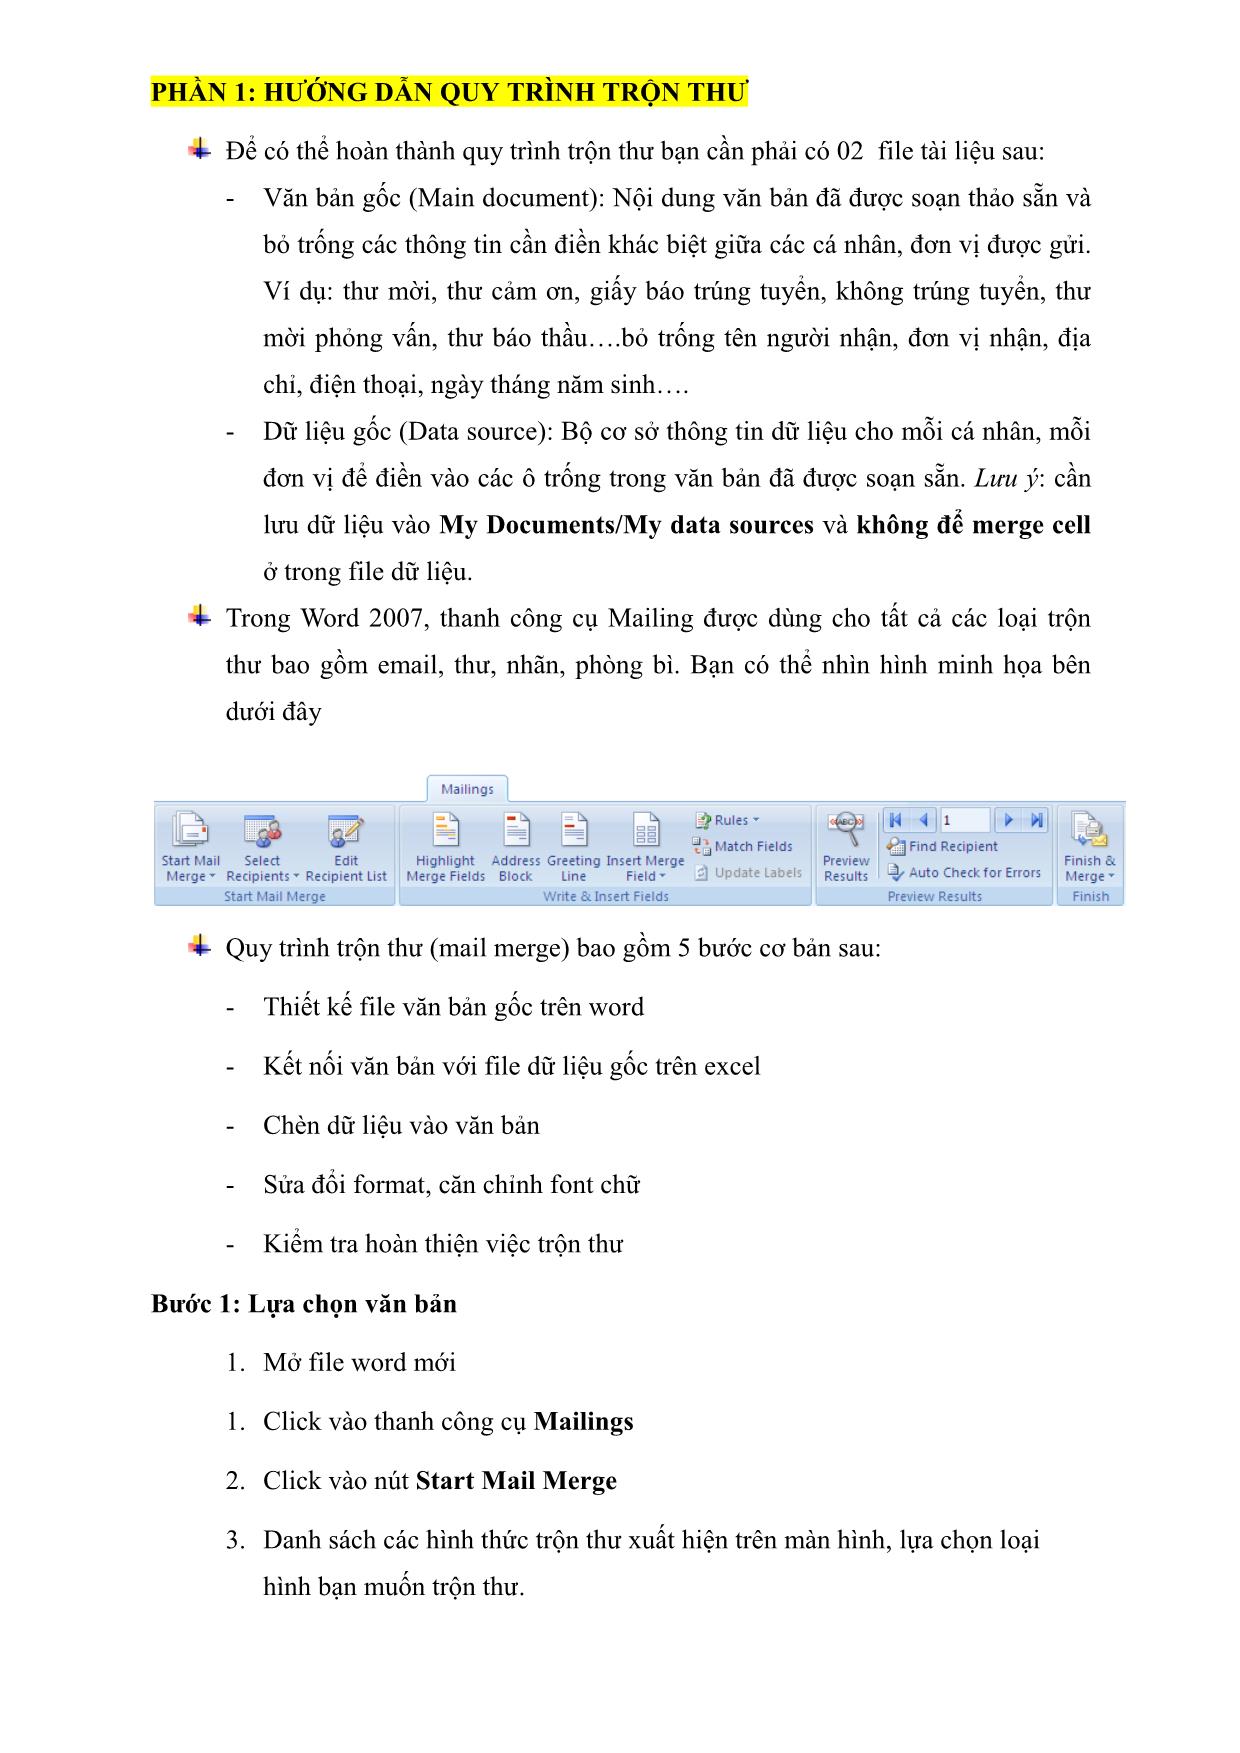 Tài liệu hướng dẫn trộn thư cho word 2007-2010 (mail merge) trang 4